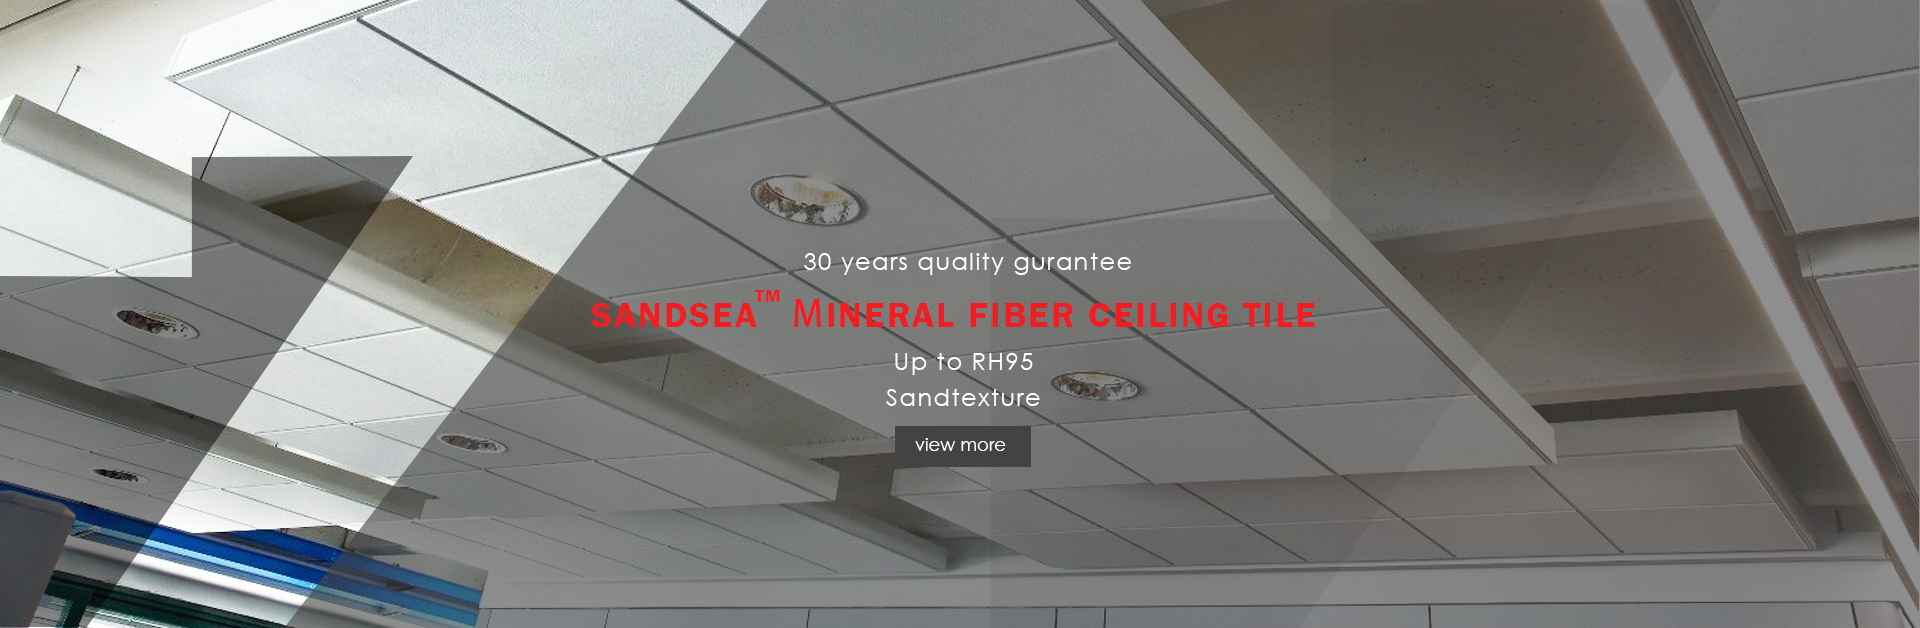 Sandsea  Mineral fiber ceiling tile